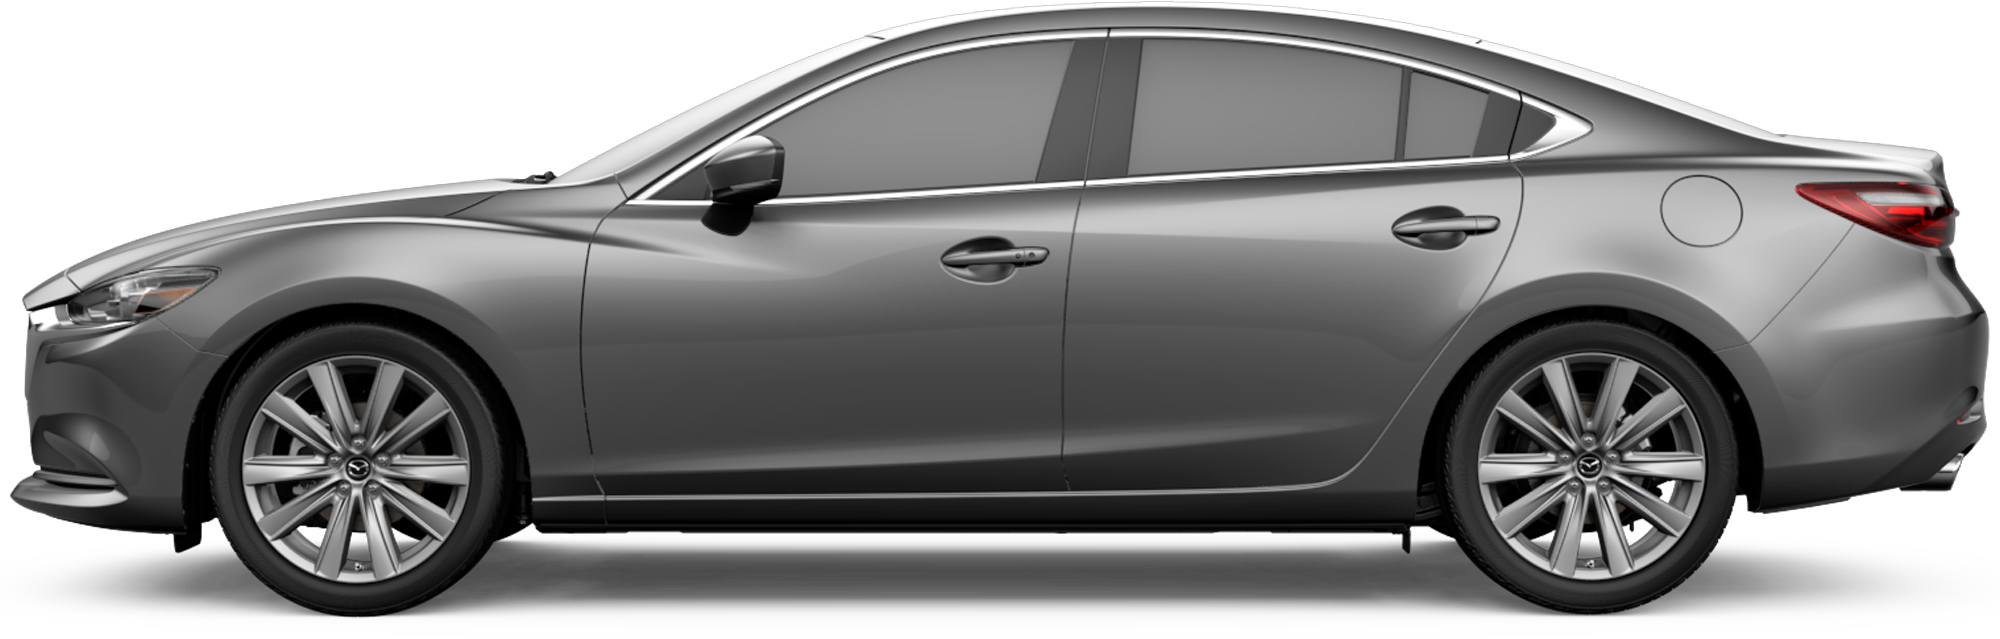 http://images.dealer.com/ddc/vehicles/2021/Mazda/Mazda6/Sedan/trim_Grand_Touring_Reserve_bba772/perspective/side-left/2021_24.png